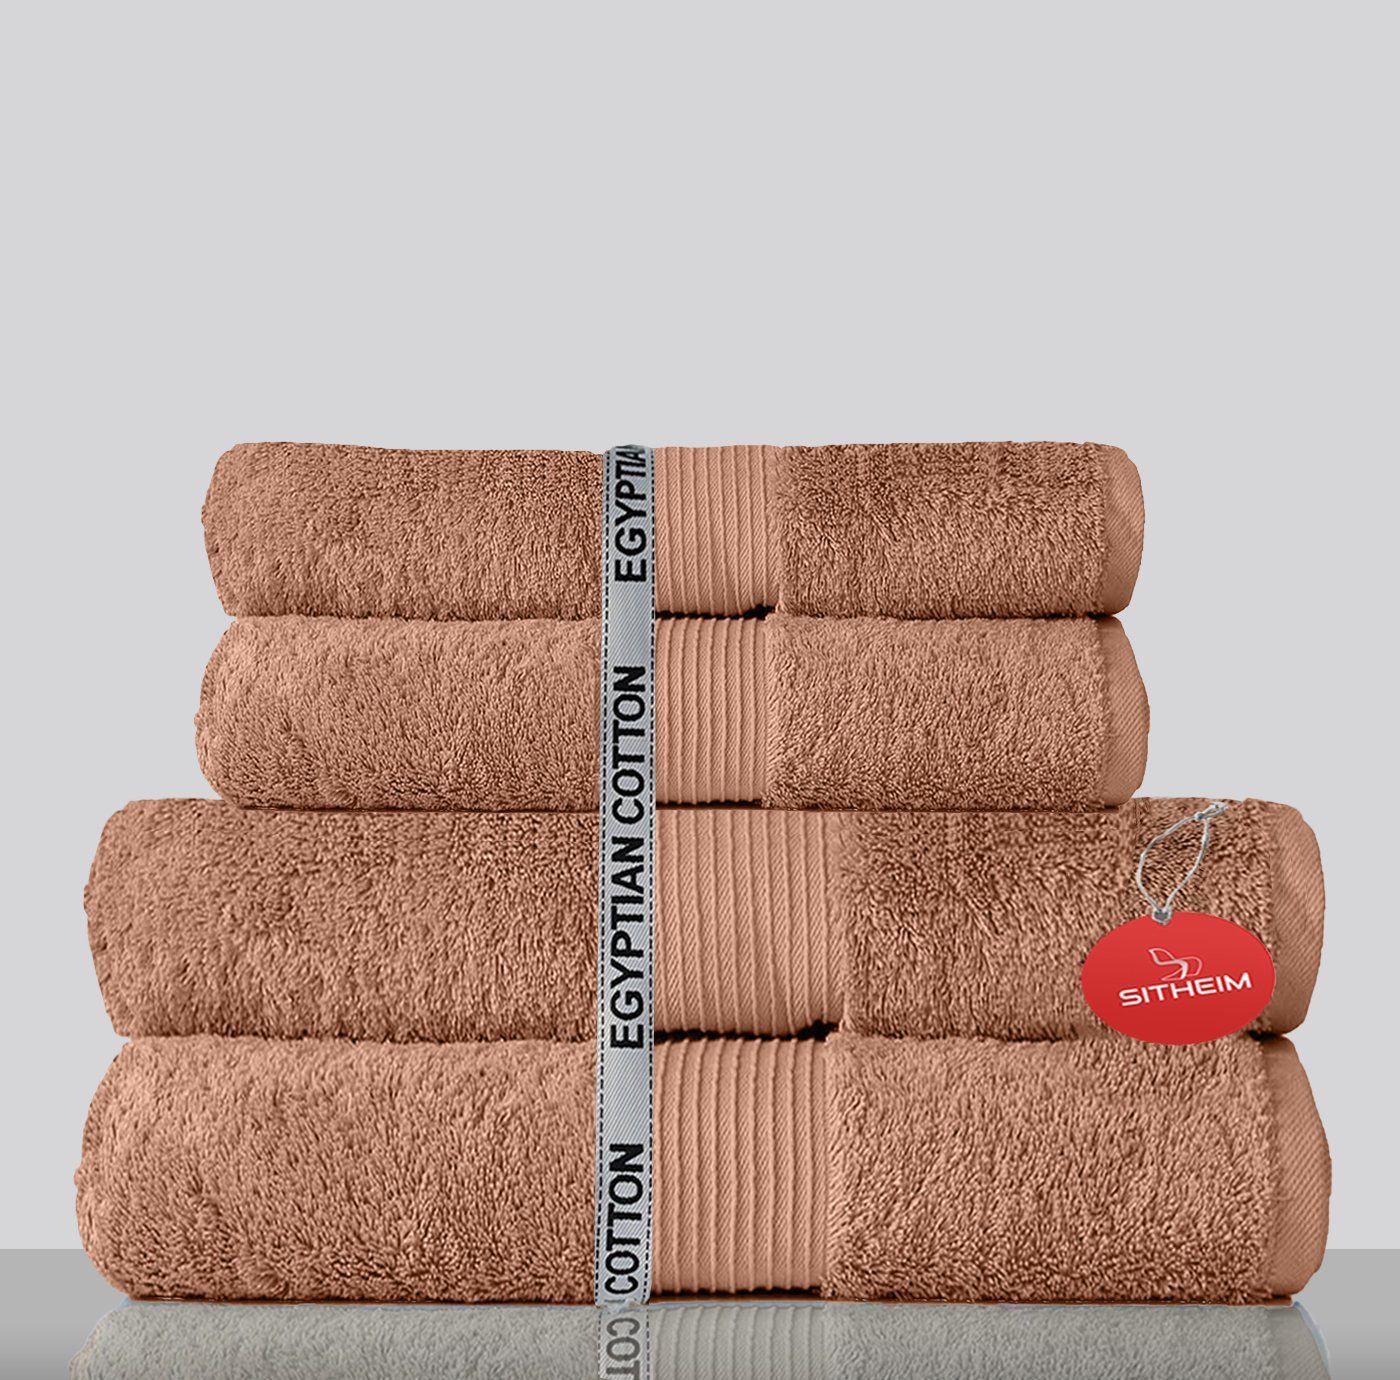 Sitheim-Europe Handtuch Set GIZA LINE Handtücher aus 100% ägyptischer Baumwolle 4-teiliges Handtuchset, ägyptische Baumwolle, (Spar-Set, 4-tlg), 100% premium ägyptische Baumwolle Taupe